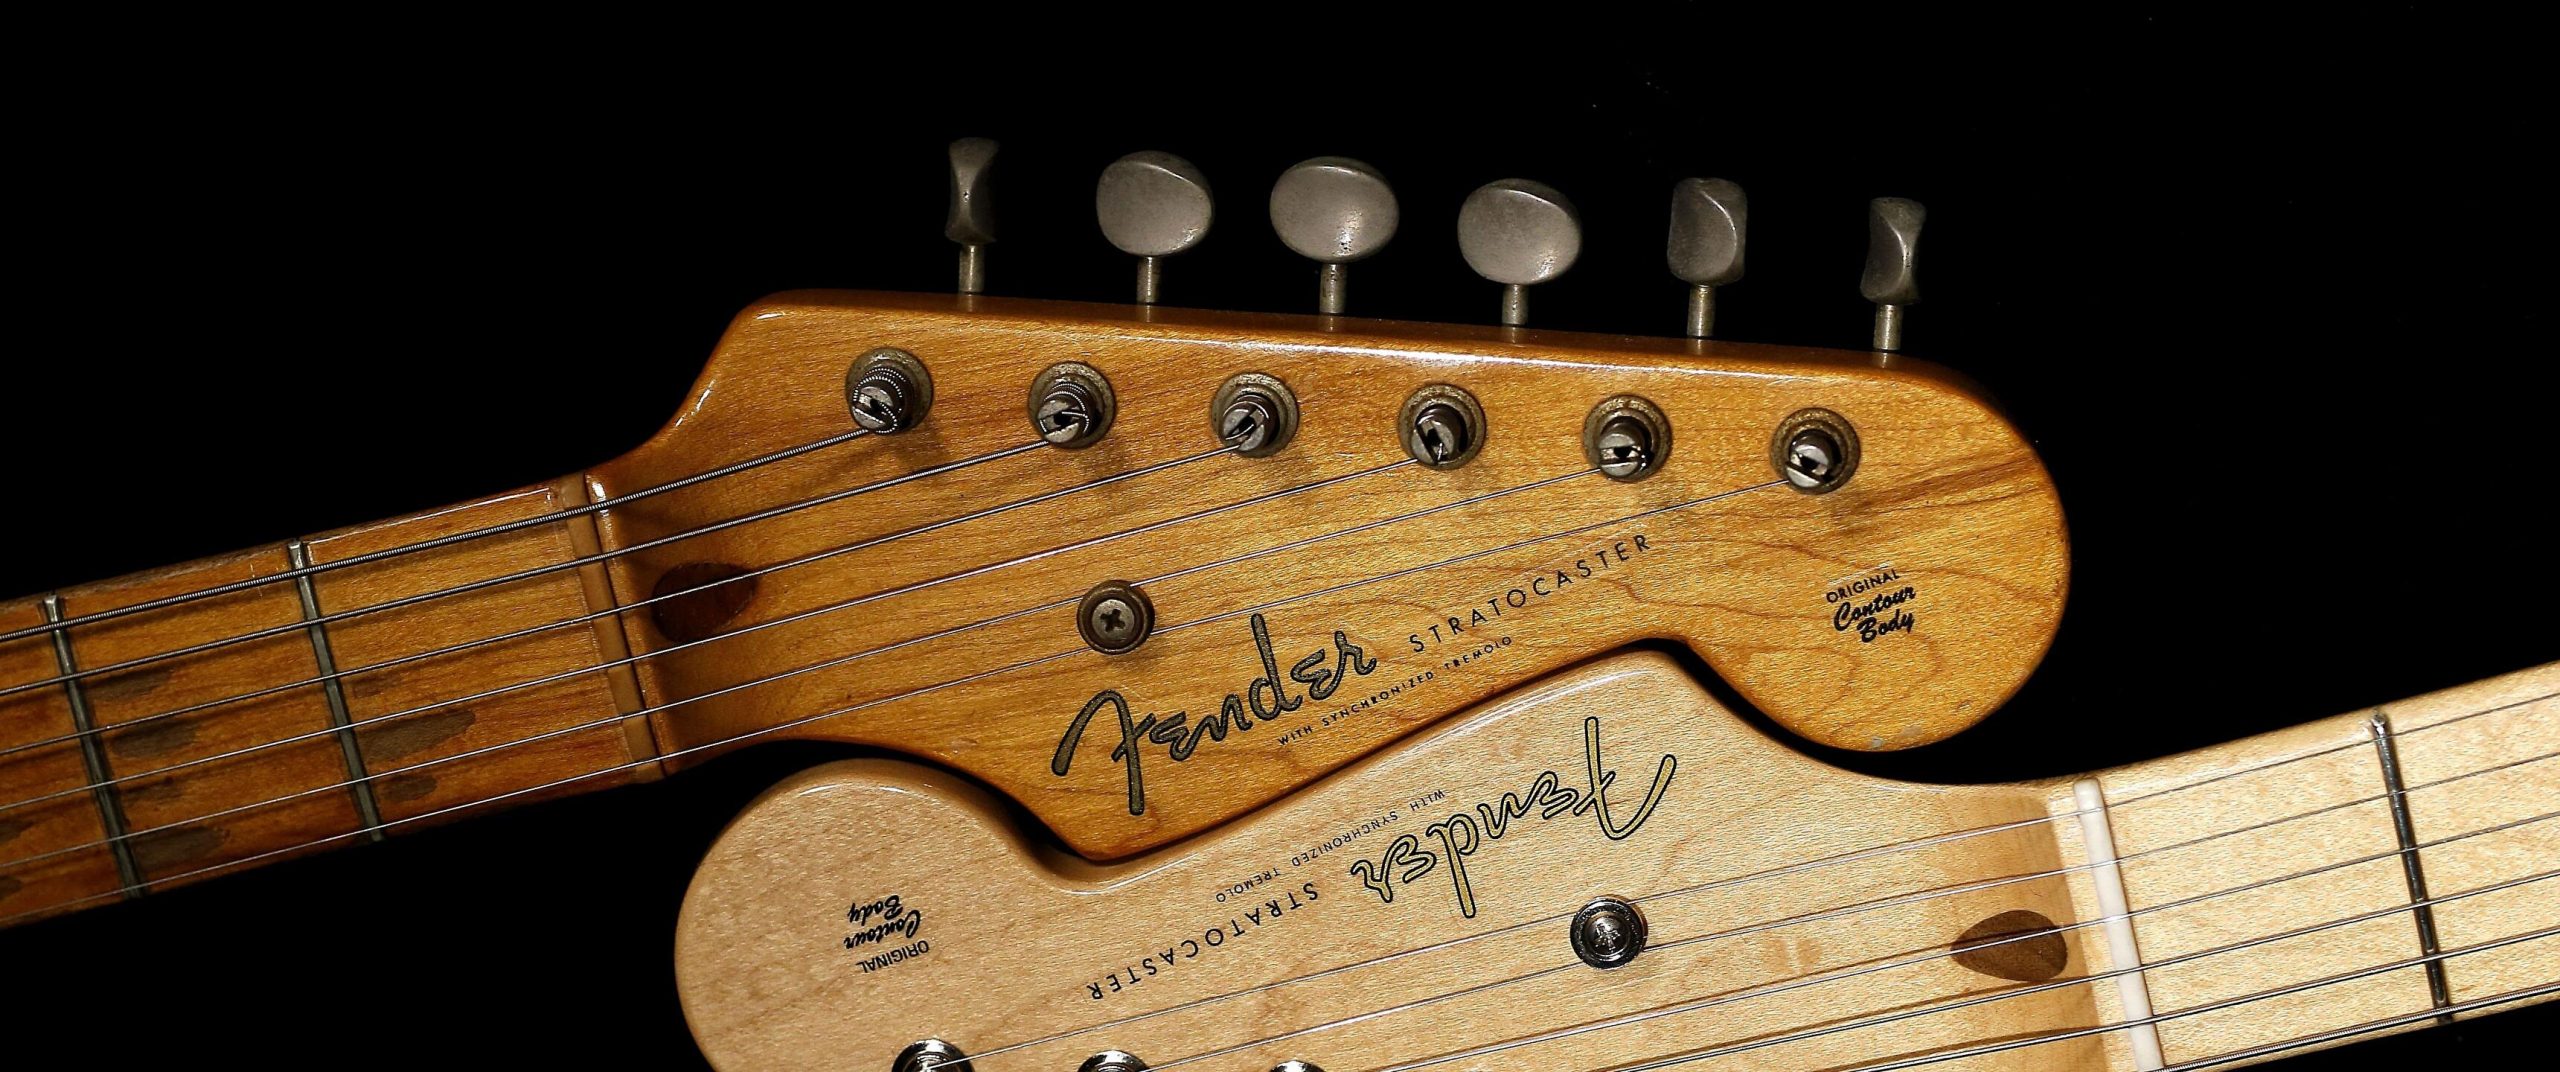 Existe diferença entre Fender e Squier?